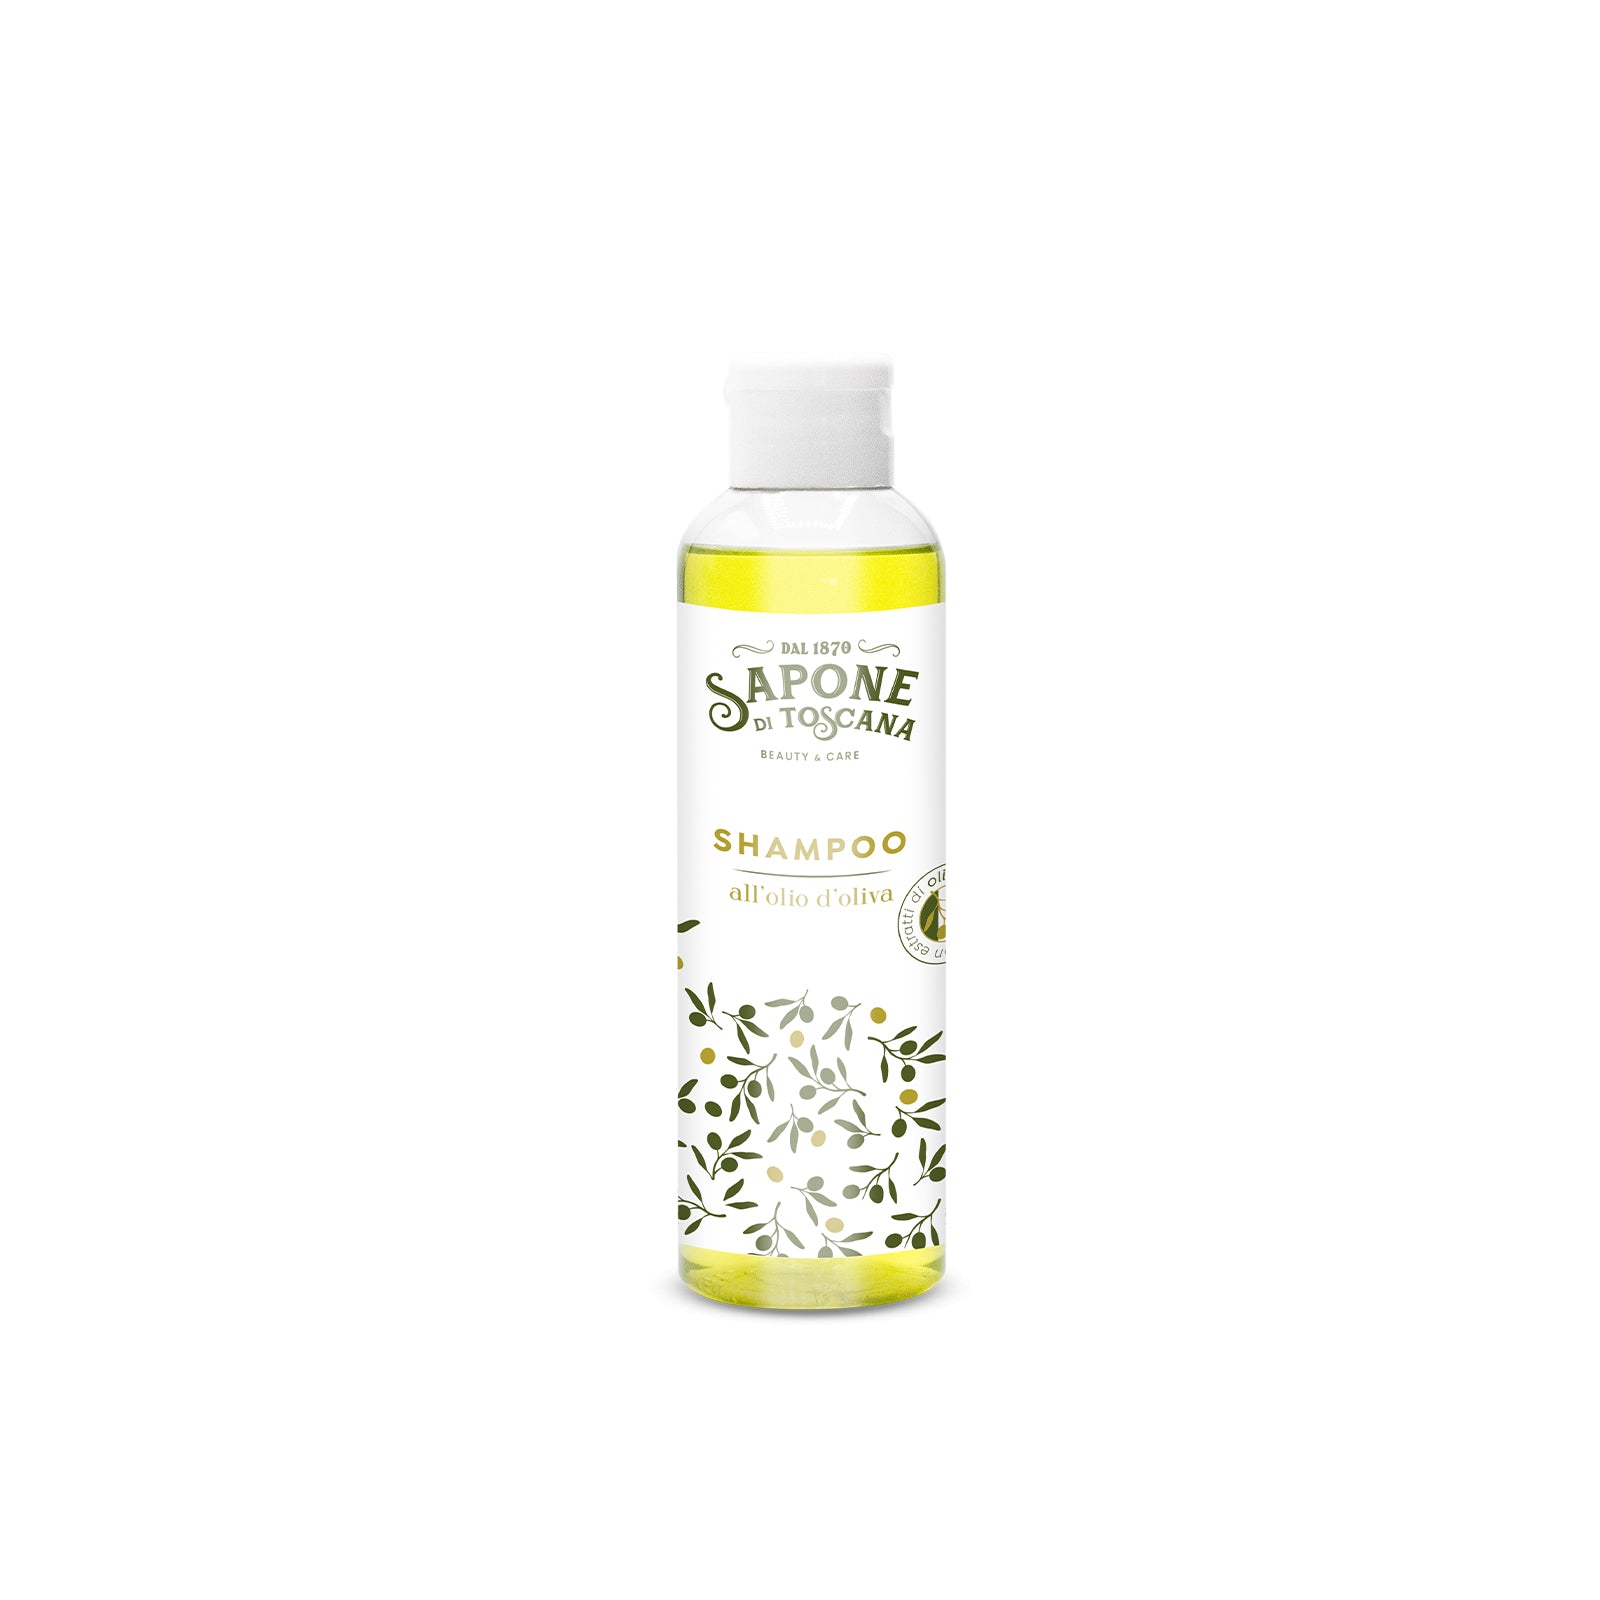 Shampoo - Olio d'oliva